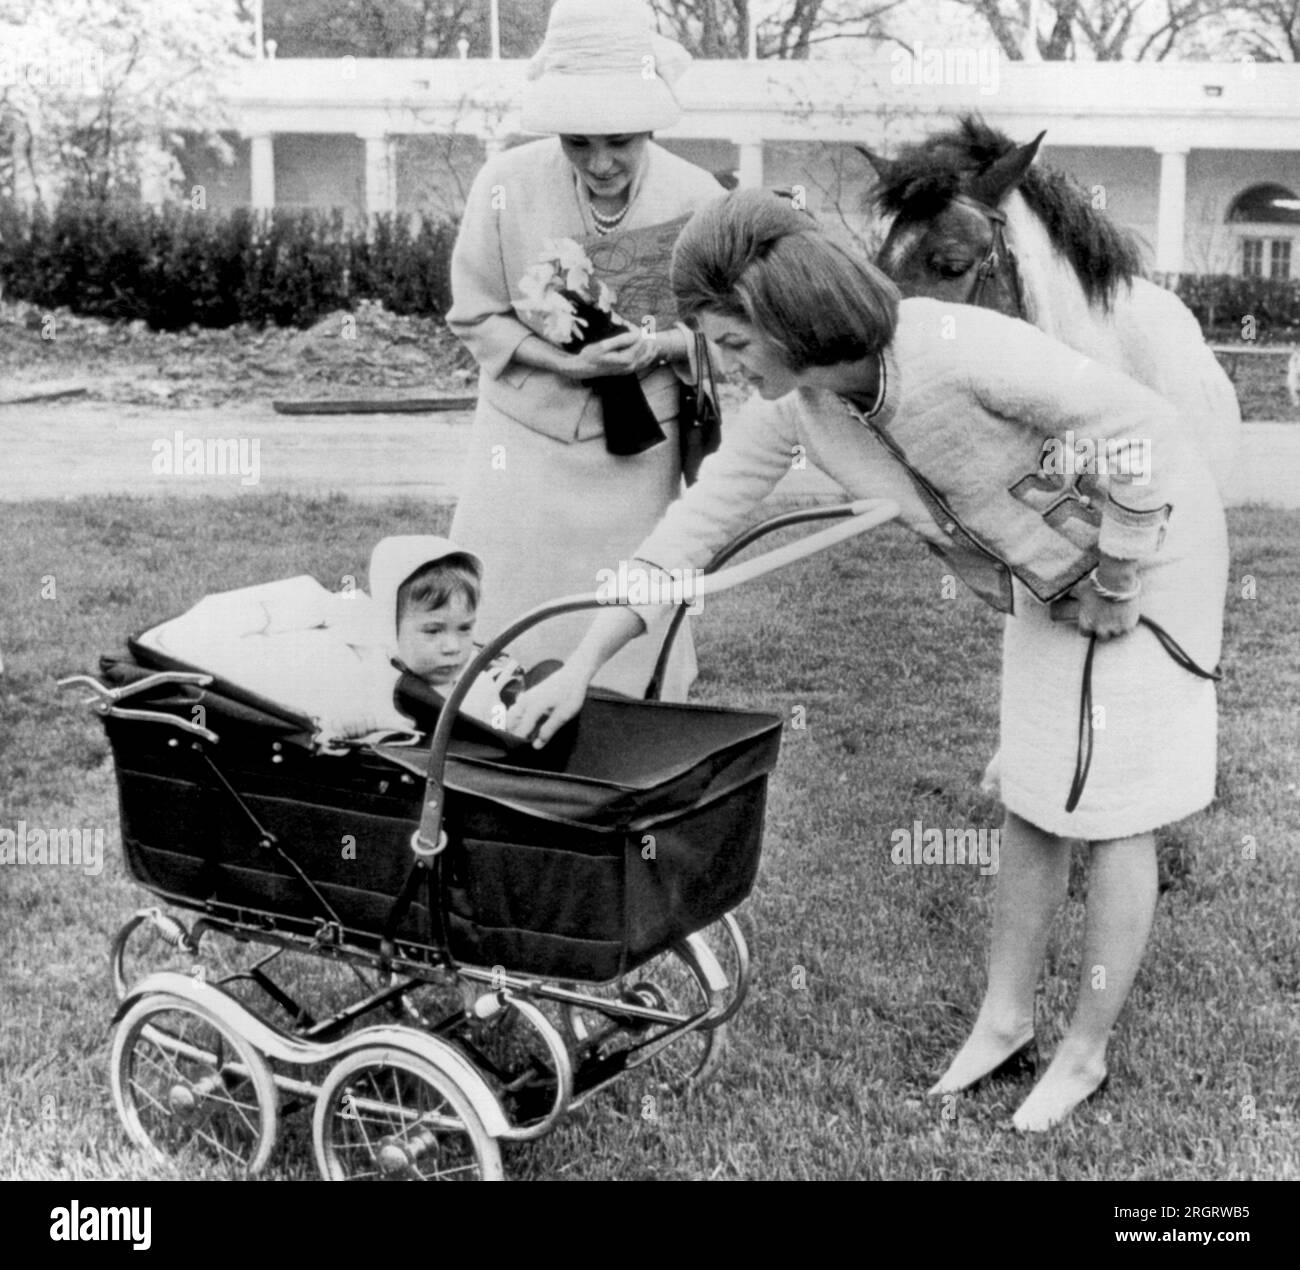 Washington, D.C. : 12 avril 1962 Mme Jacqueline Kennedy présente son fils John à l'impératrice Farah d'Iran alors qu'ils visitent le domaine de la Maison Blanche. Derrière elle se trouve le poney Kennedy, Macaroni. Banque D'Images